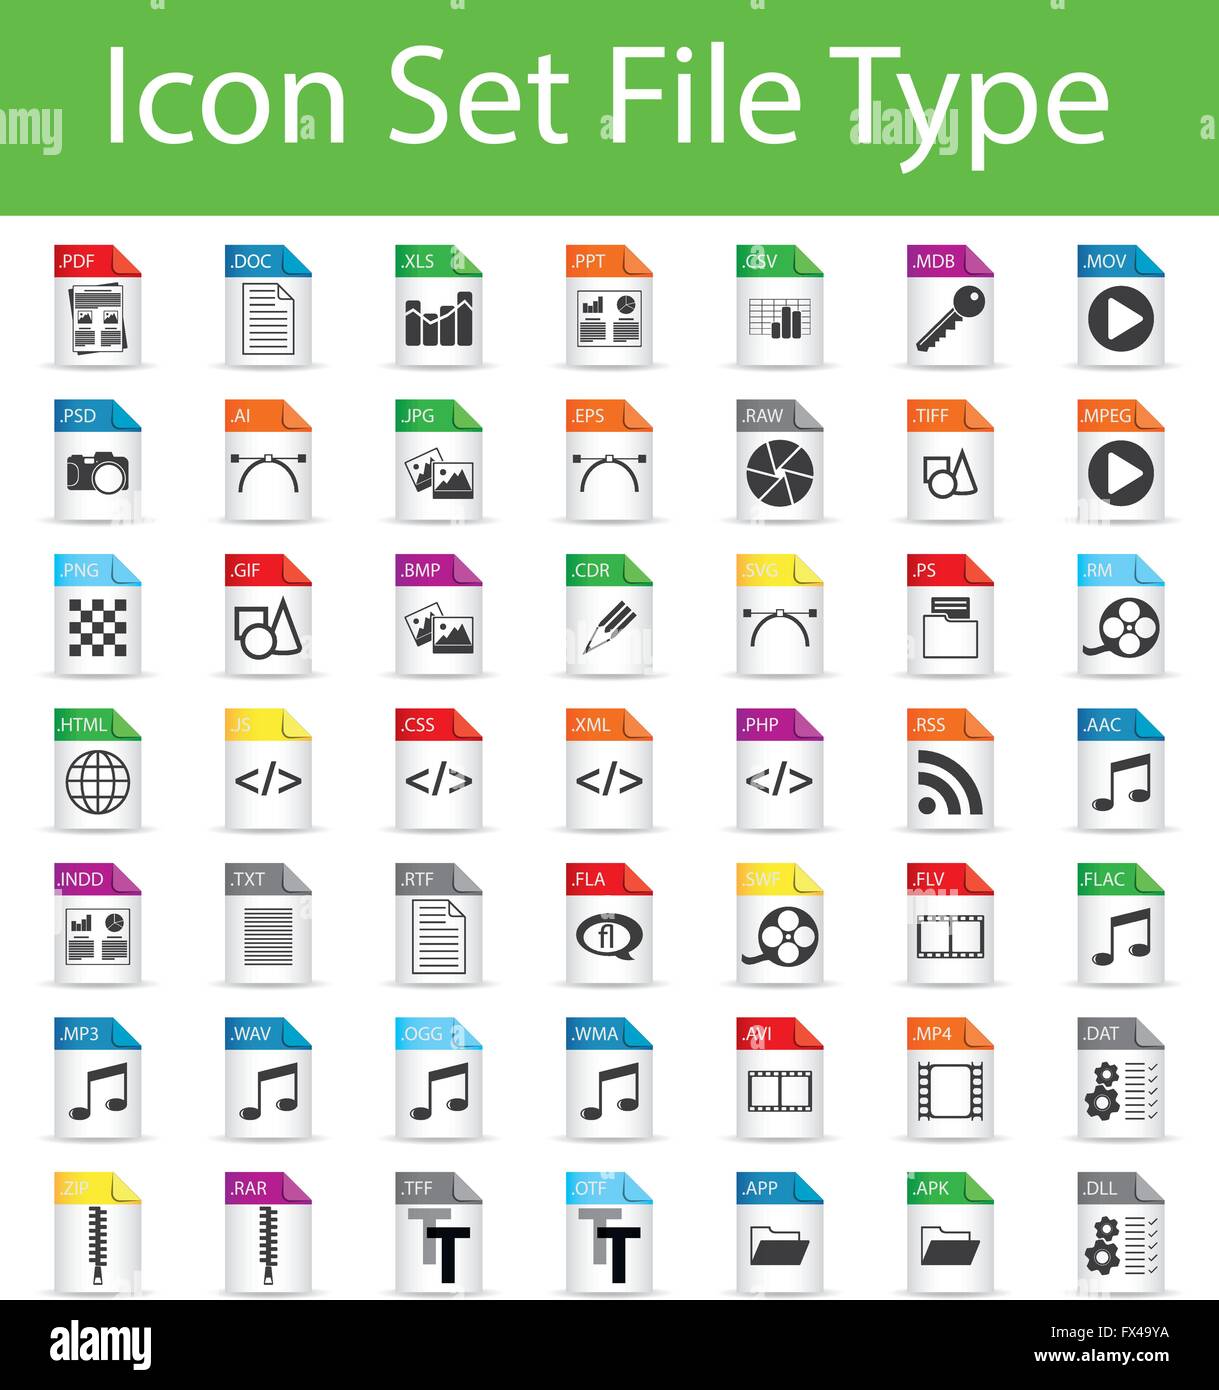 Il set di icone di file con 49 icone per un utilizzo creativo in graphic design Illustrazione Vettoriale